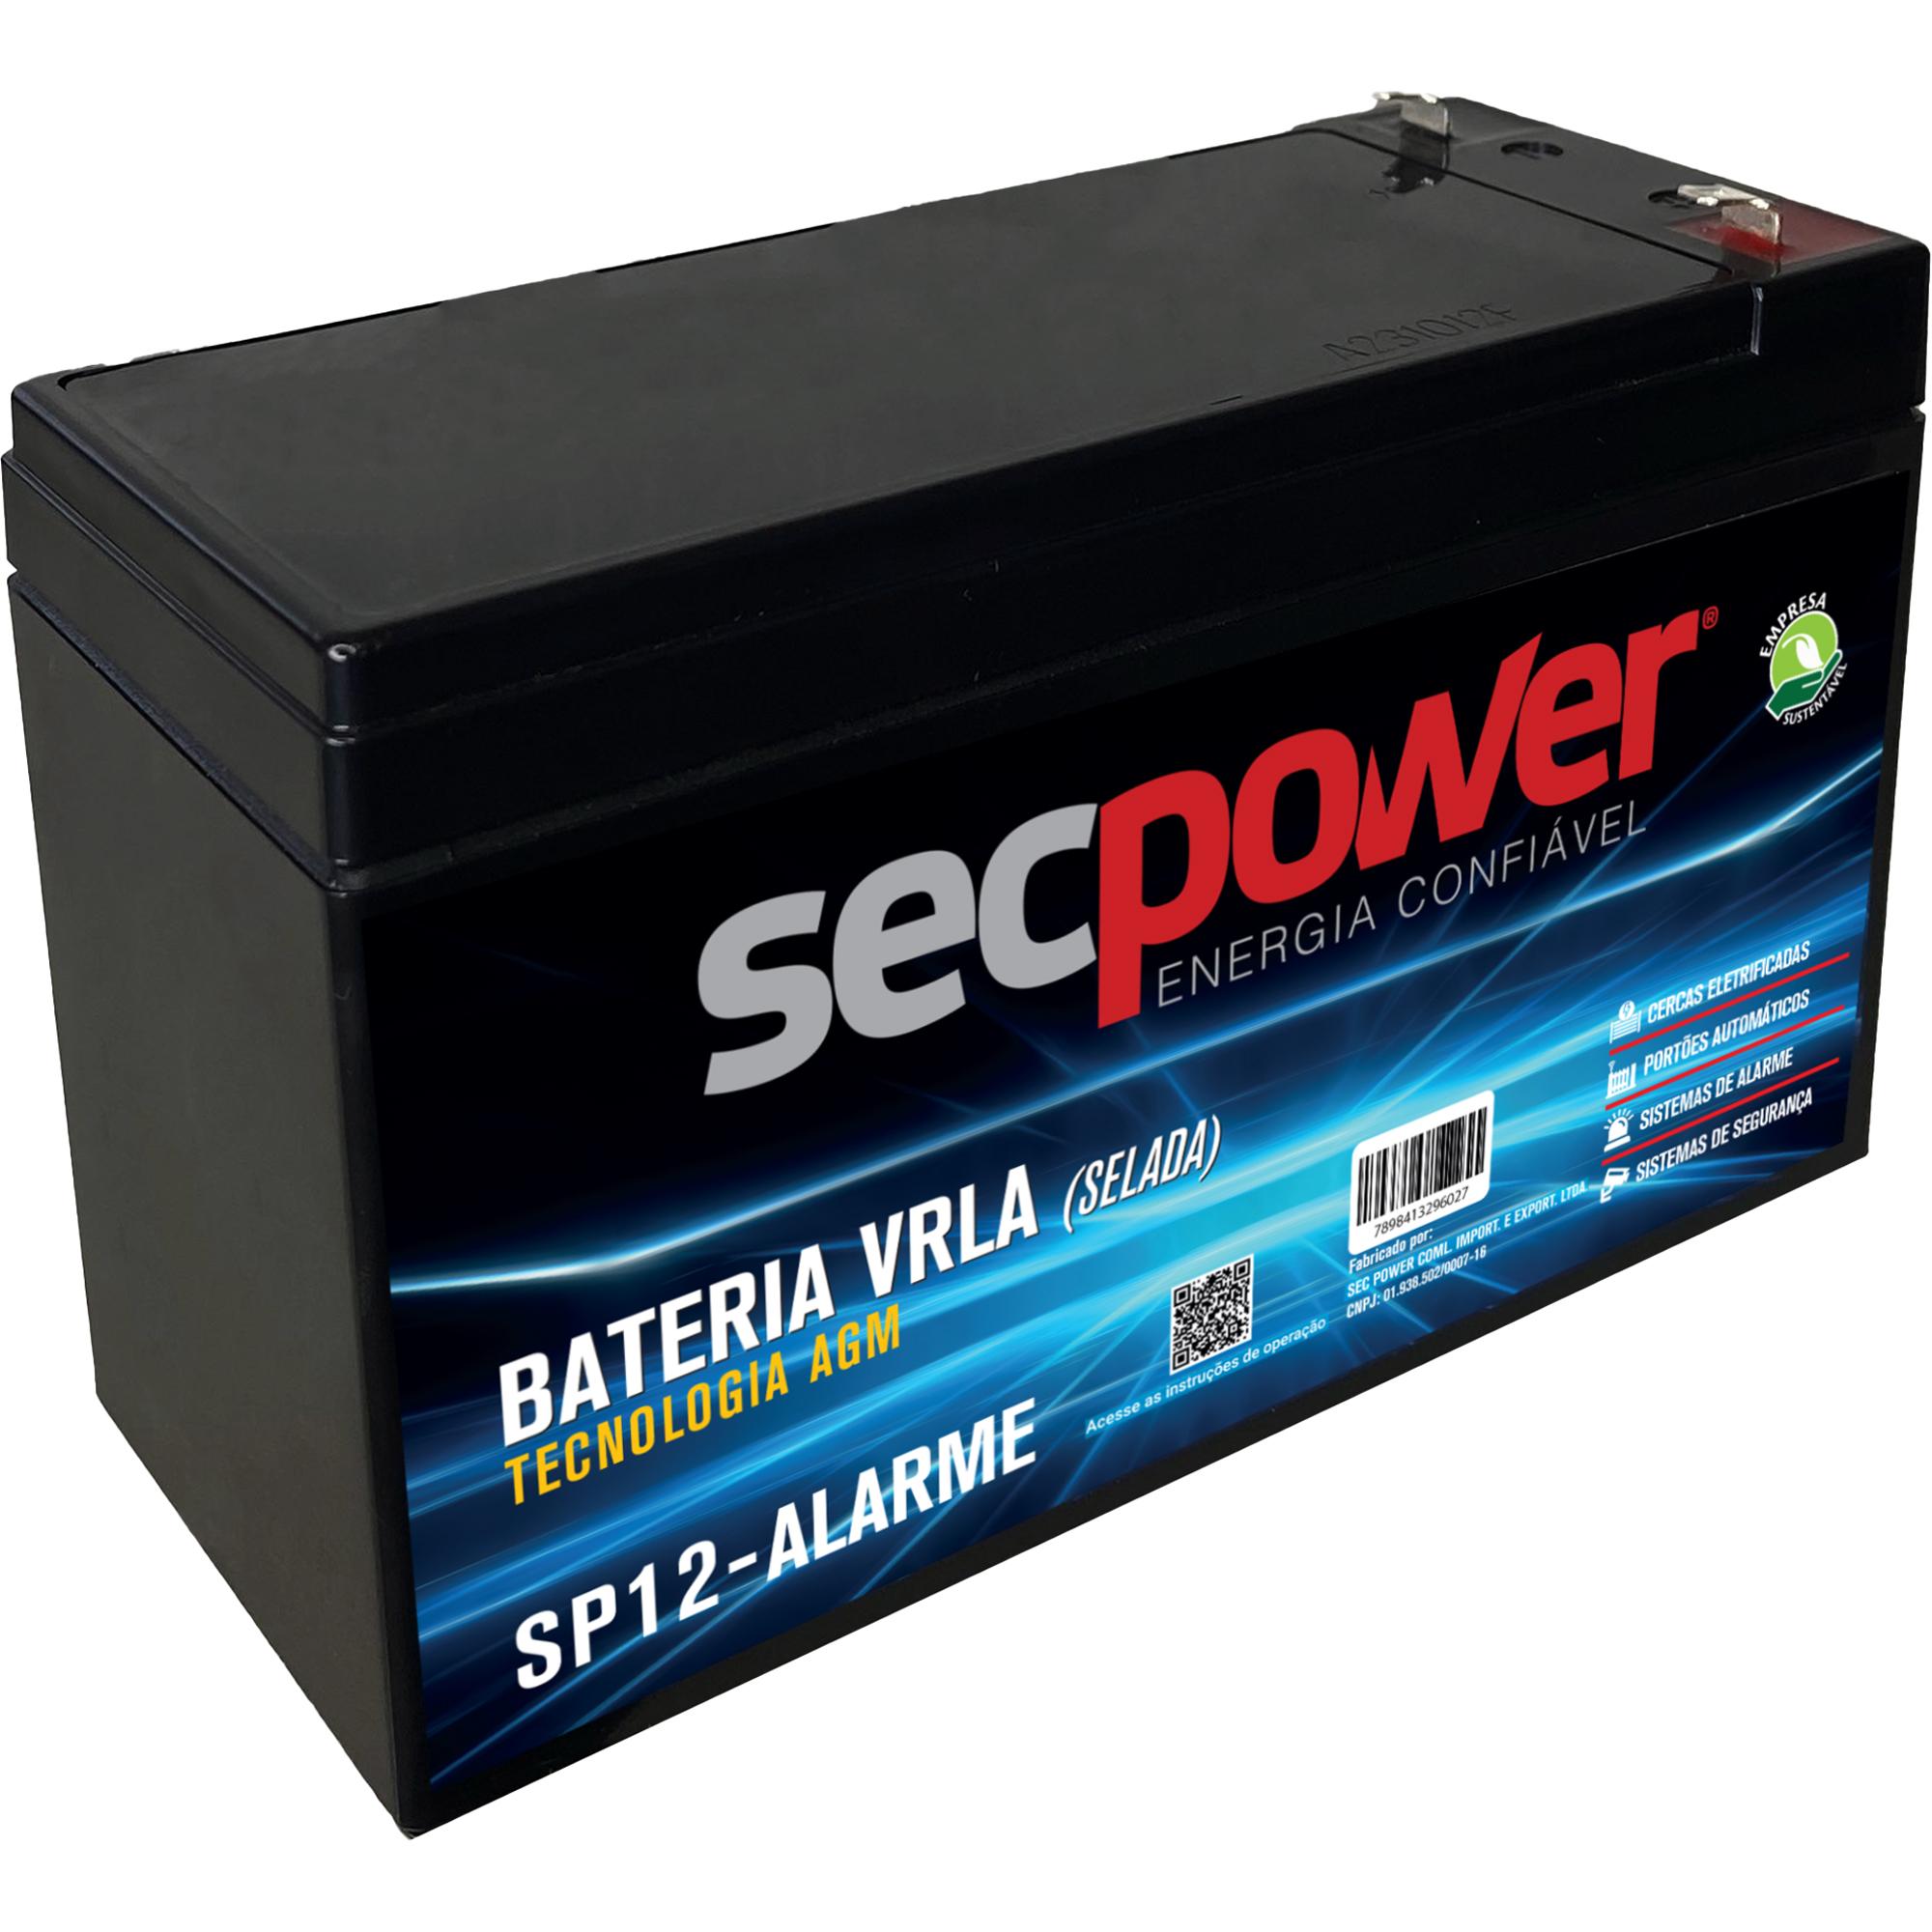 Bateria Selada 12V P12-Alarme SecPower